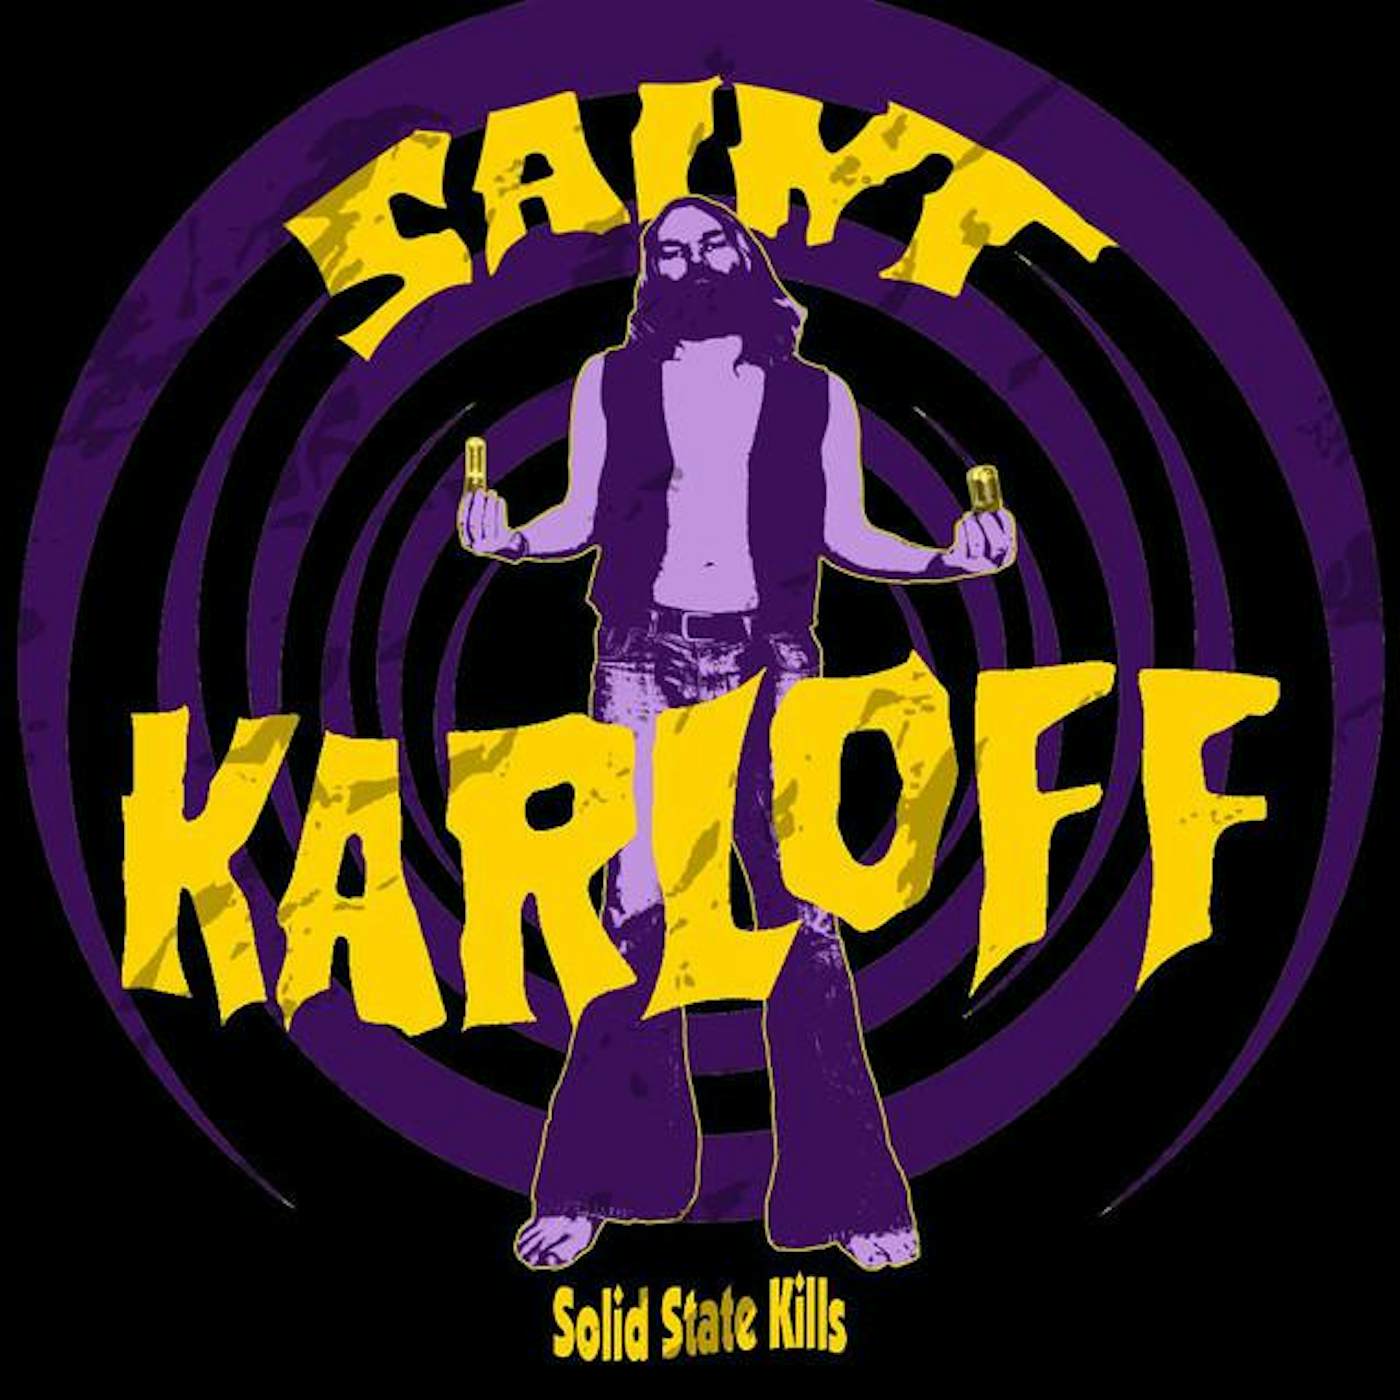 Saint Karloff